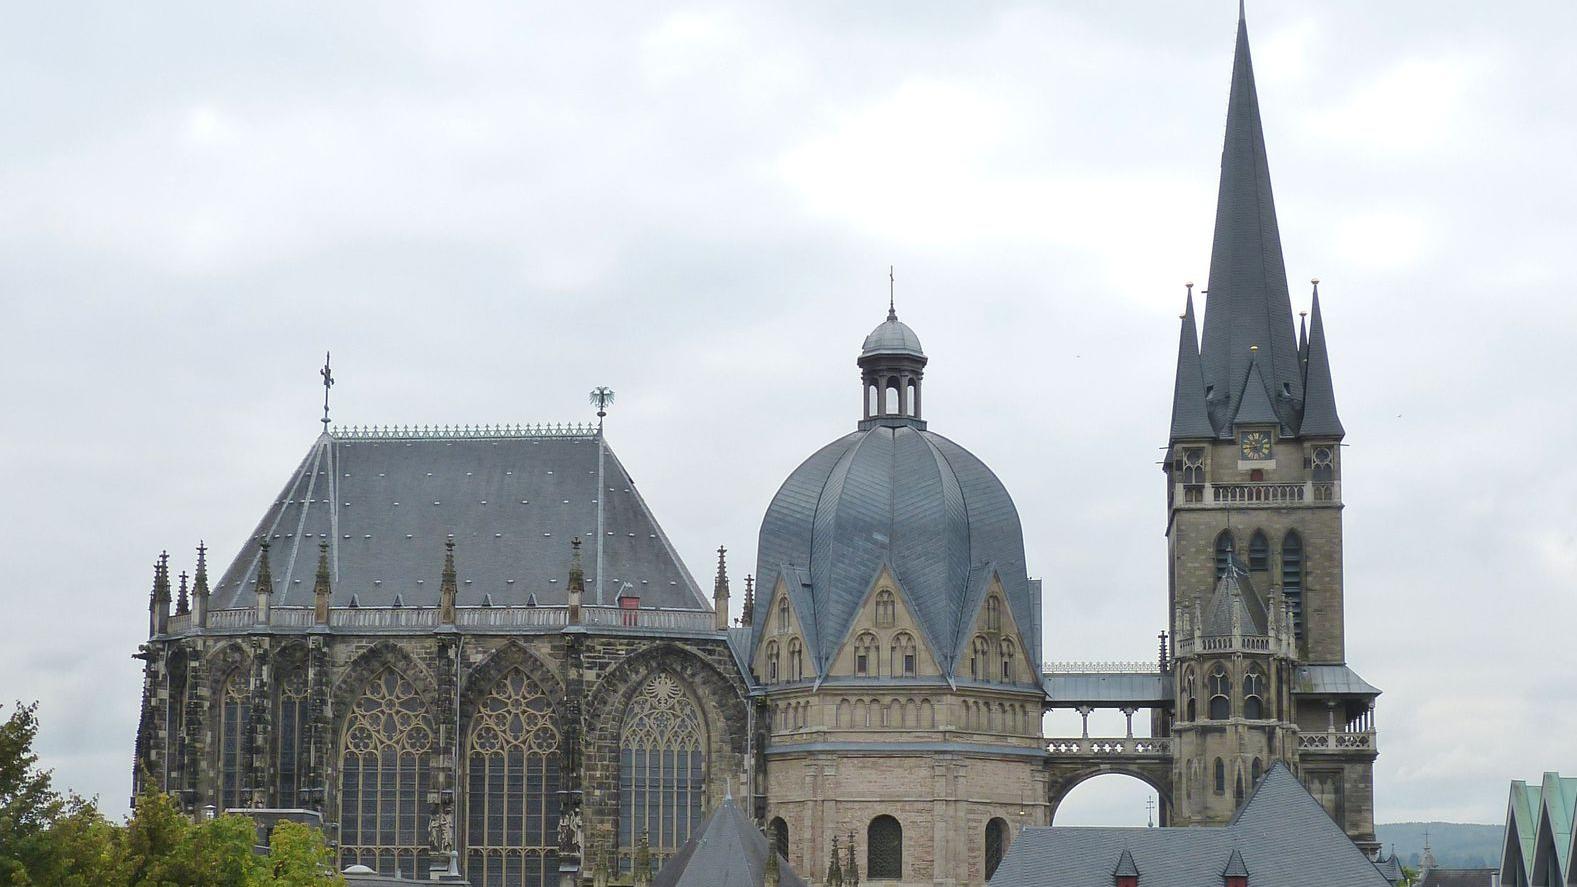 Wohin geht der Weg im Bistum Aachen? (c) www.pixabay.com